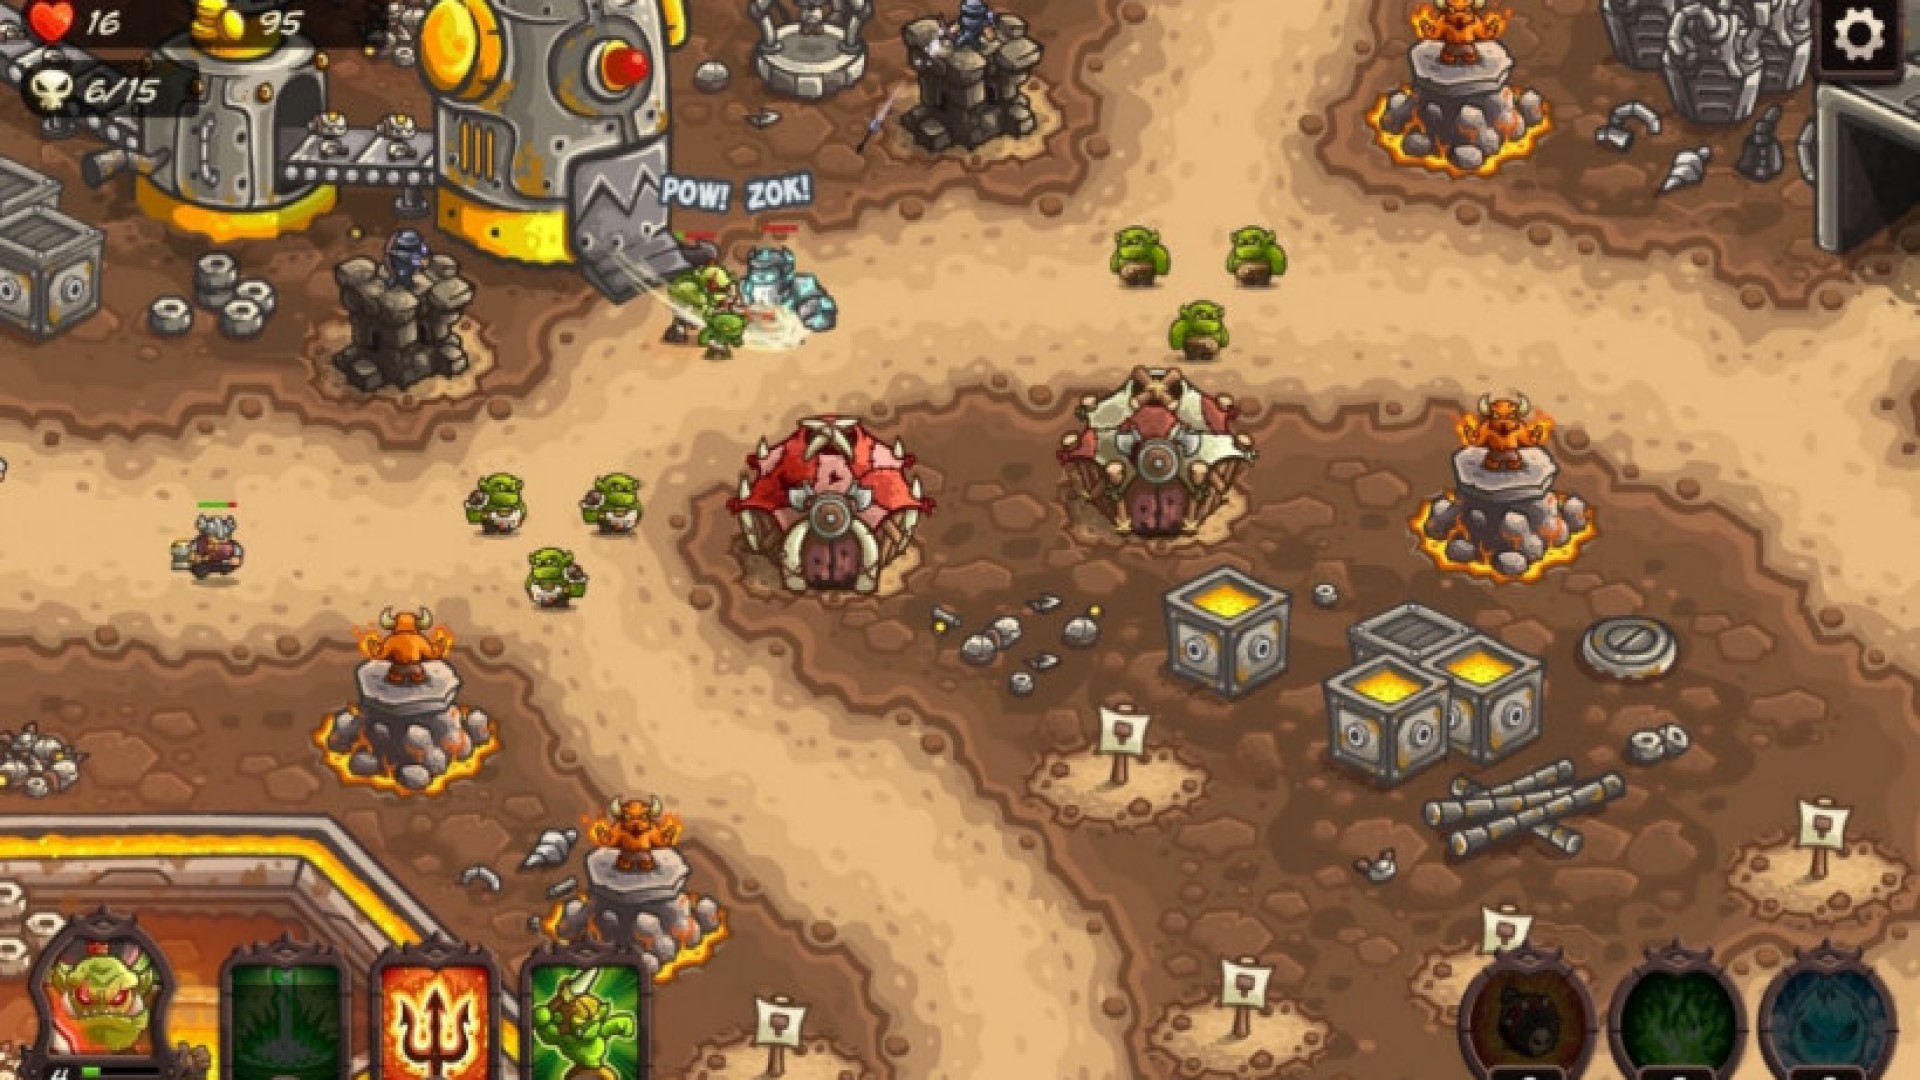 Trò chơi chiến lược di động tốt nhất: Kingdom Rush: Vengeance. Hình ảnh cho thấy Orc và các sinh vật khác tấn công một căn cứ